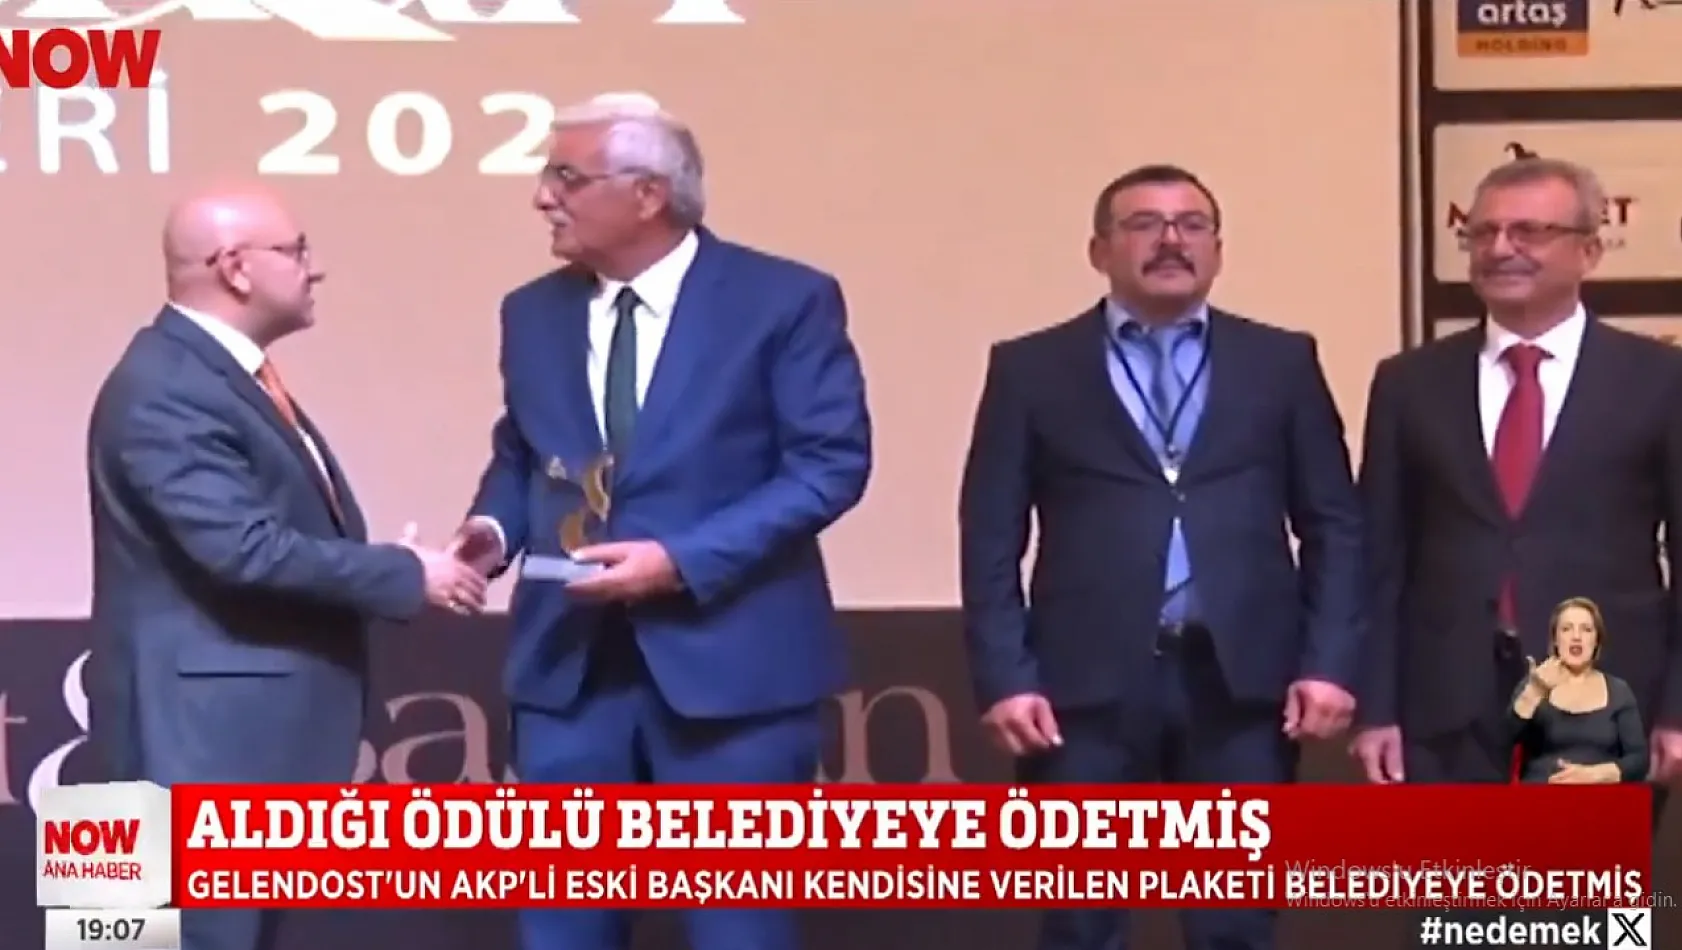 Belediye Başkanı Kayseri'de parayla ödül almış! O törende Kayserili başkanlar da ödül almıştı.